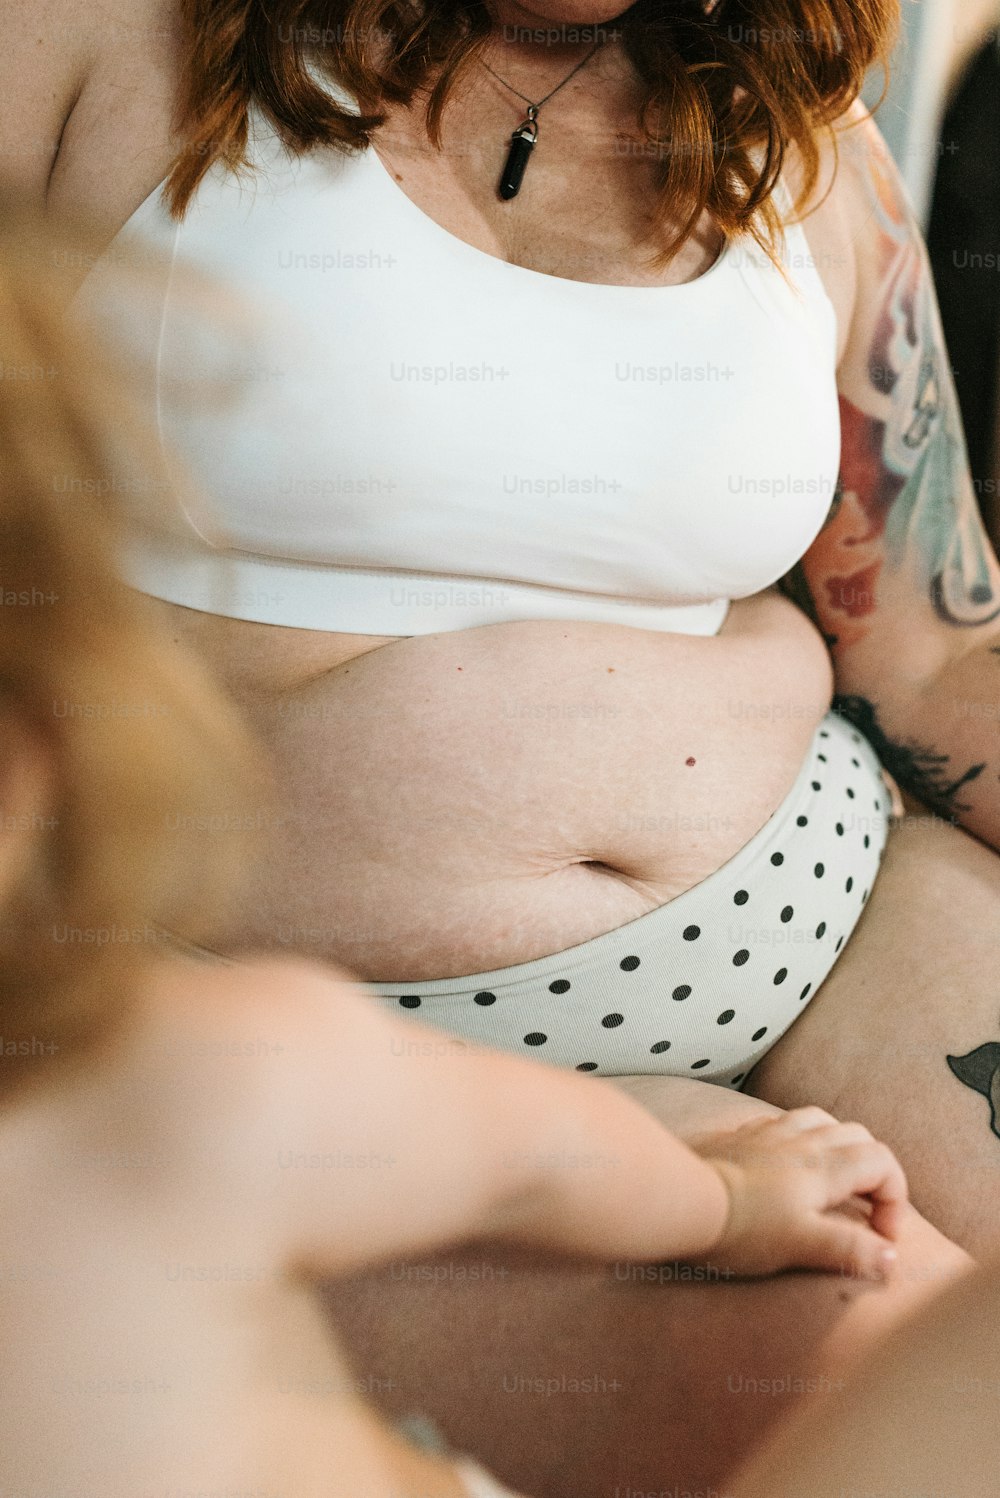 una mujer embarazada con tatuajes en el estómago